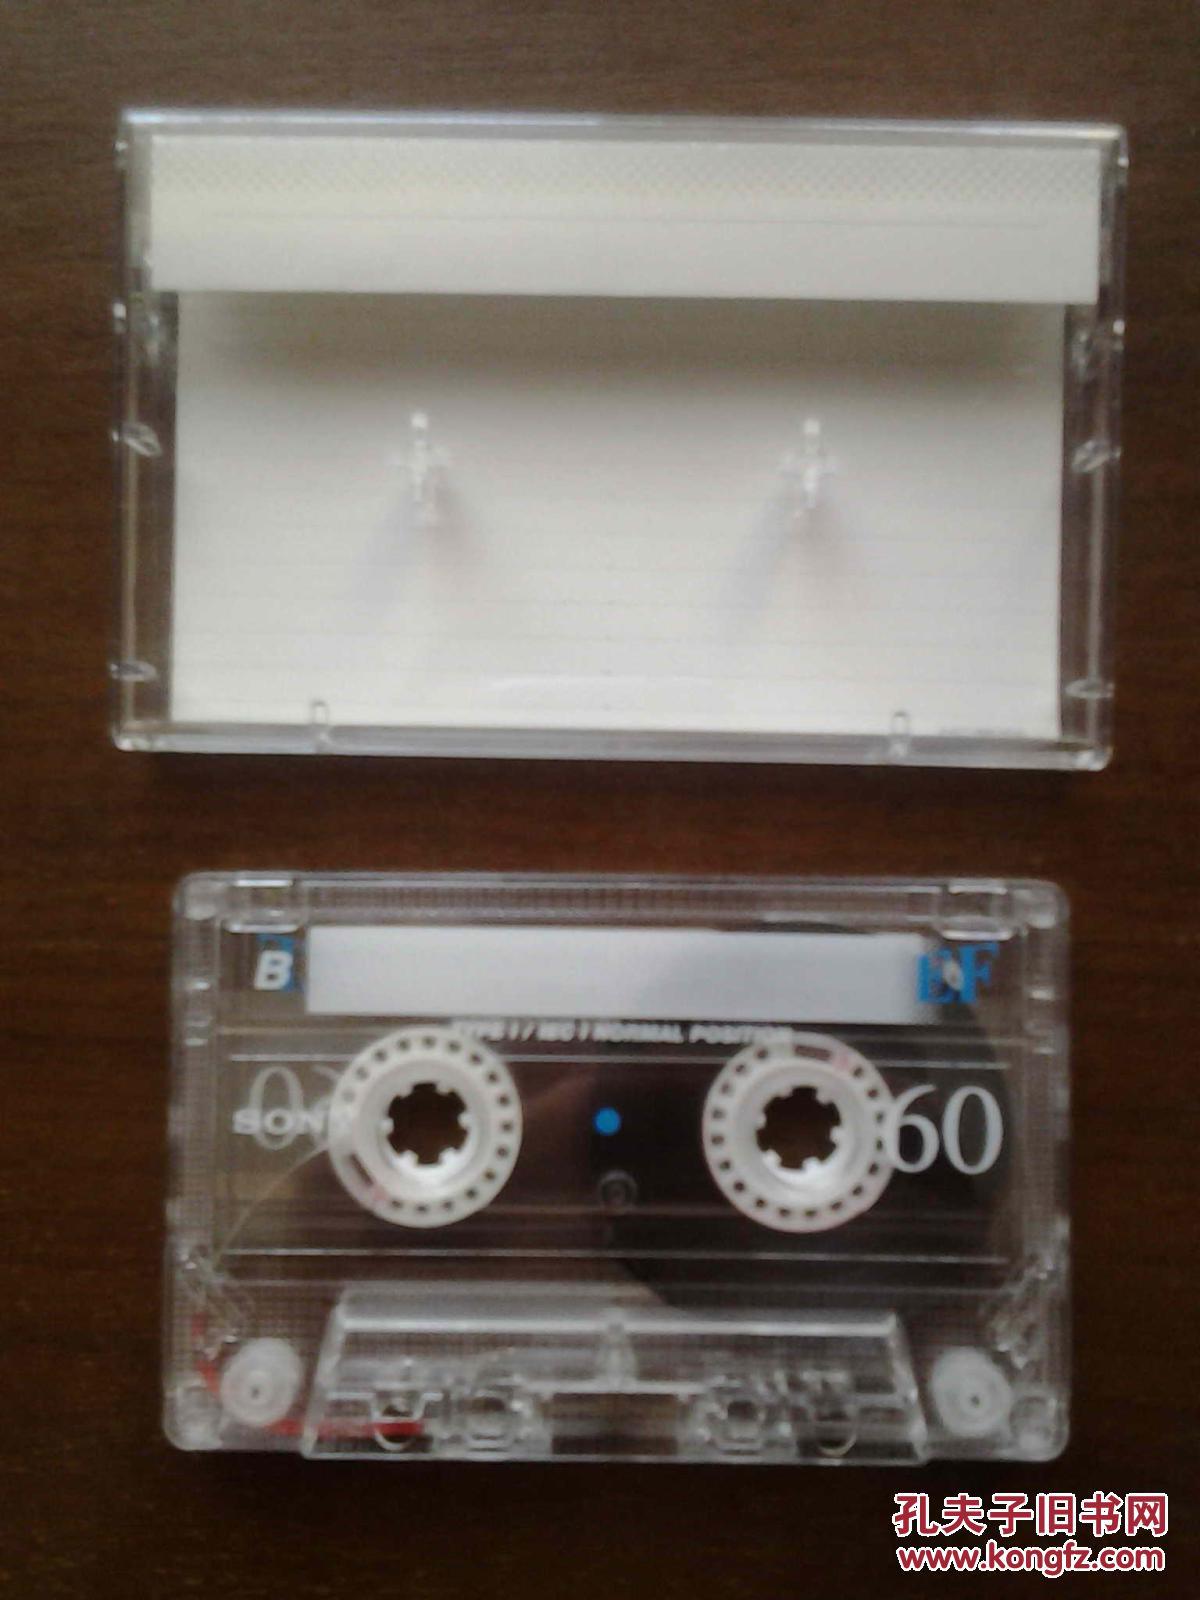 【图】磁带 一盒10盘 SONY索尼空白带EF60(